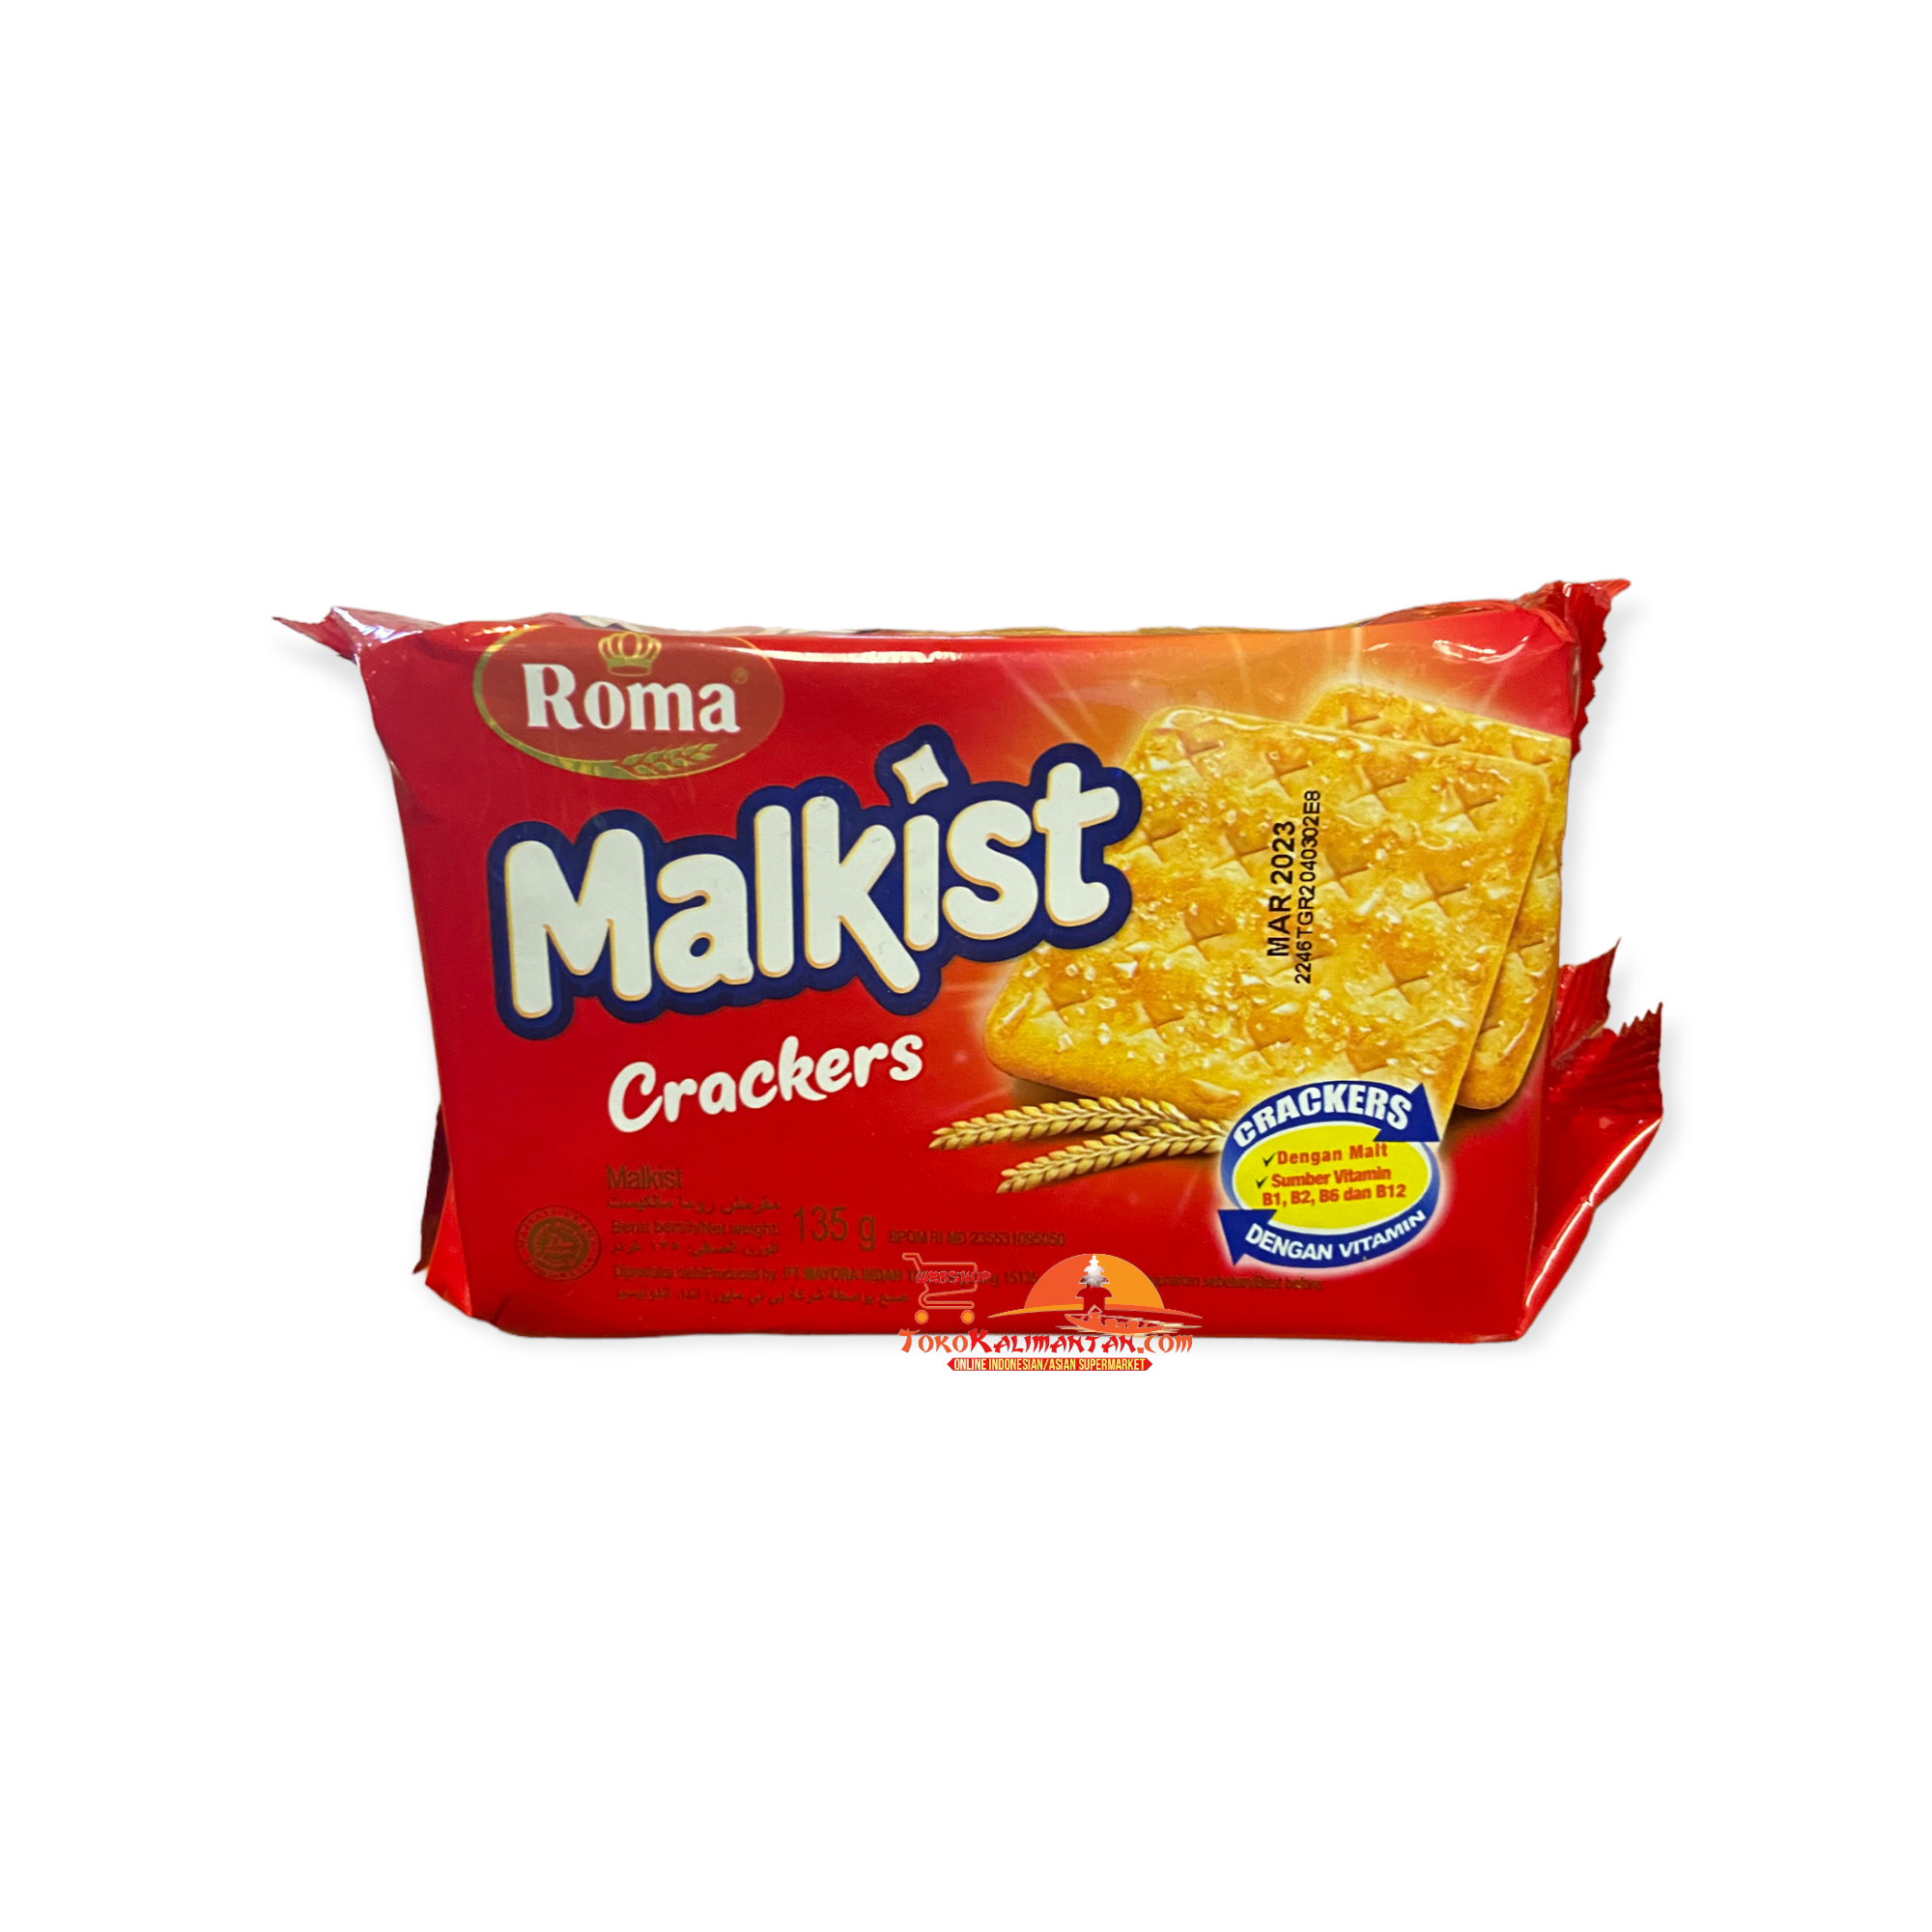 Roma Roma - Malkist Crackers